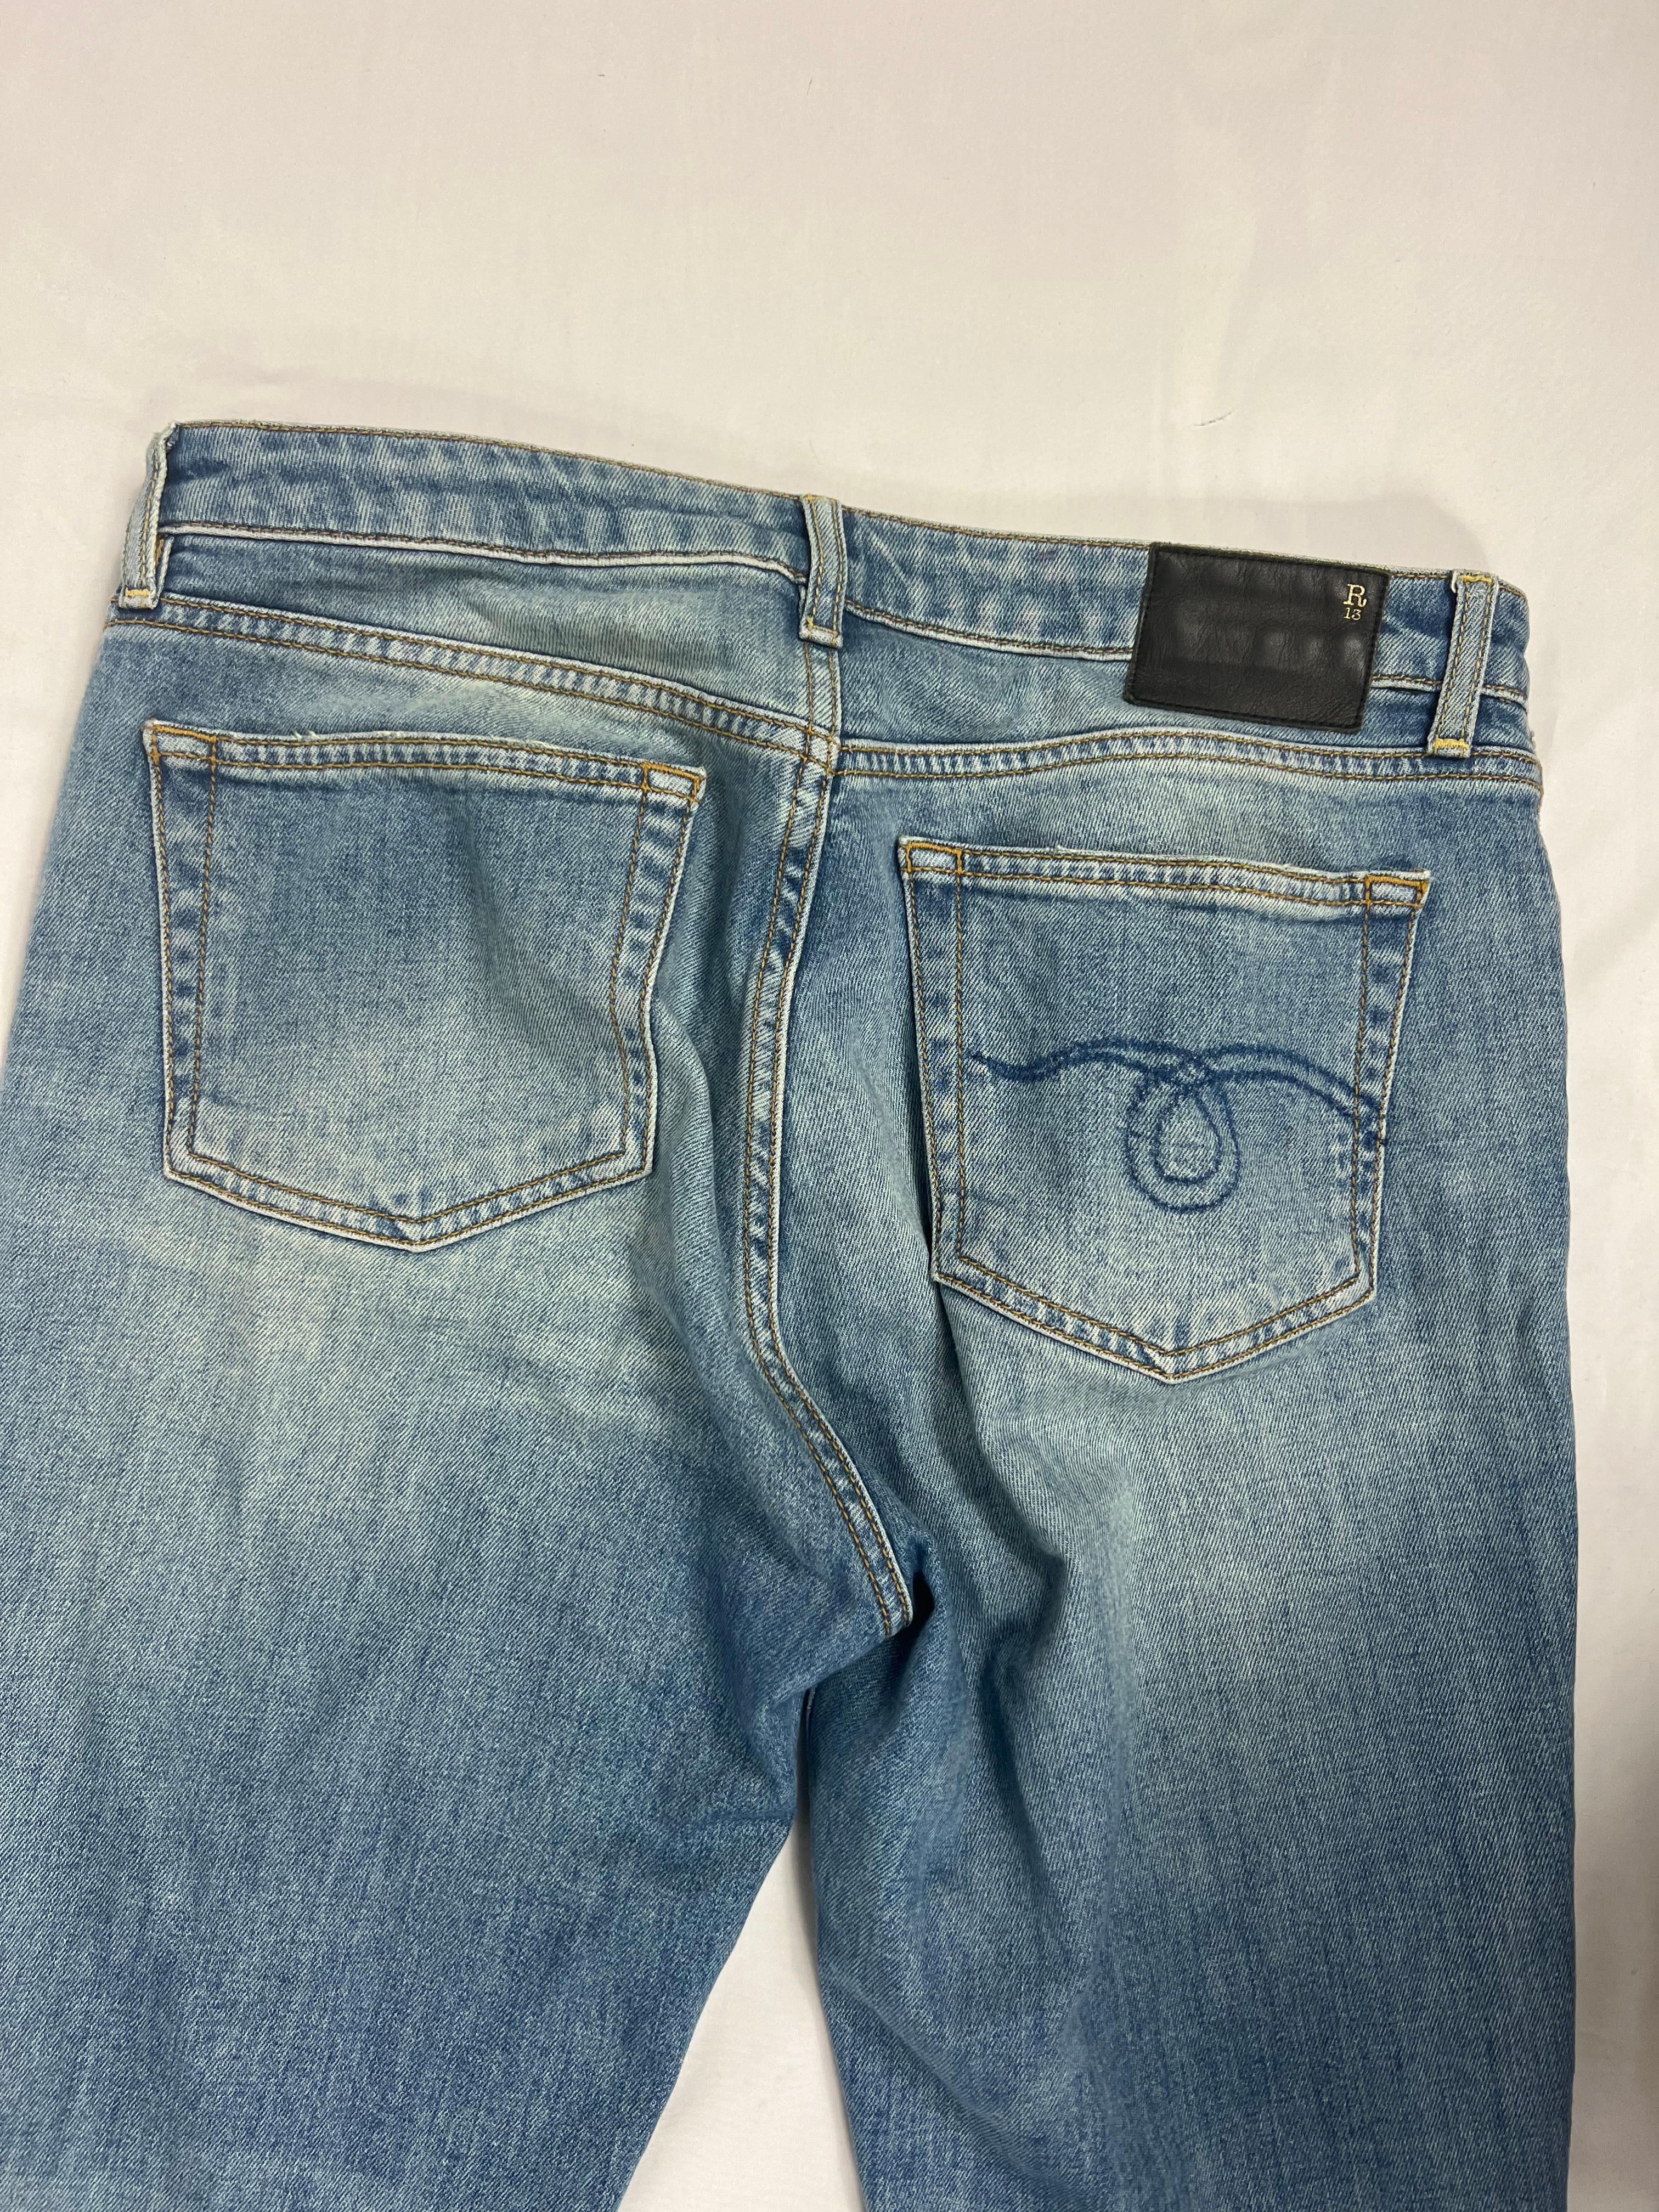 Gray R13 Drew Stretch Kick Fit Denim Jeans, Size 28 For Sale